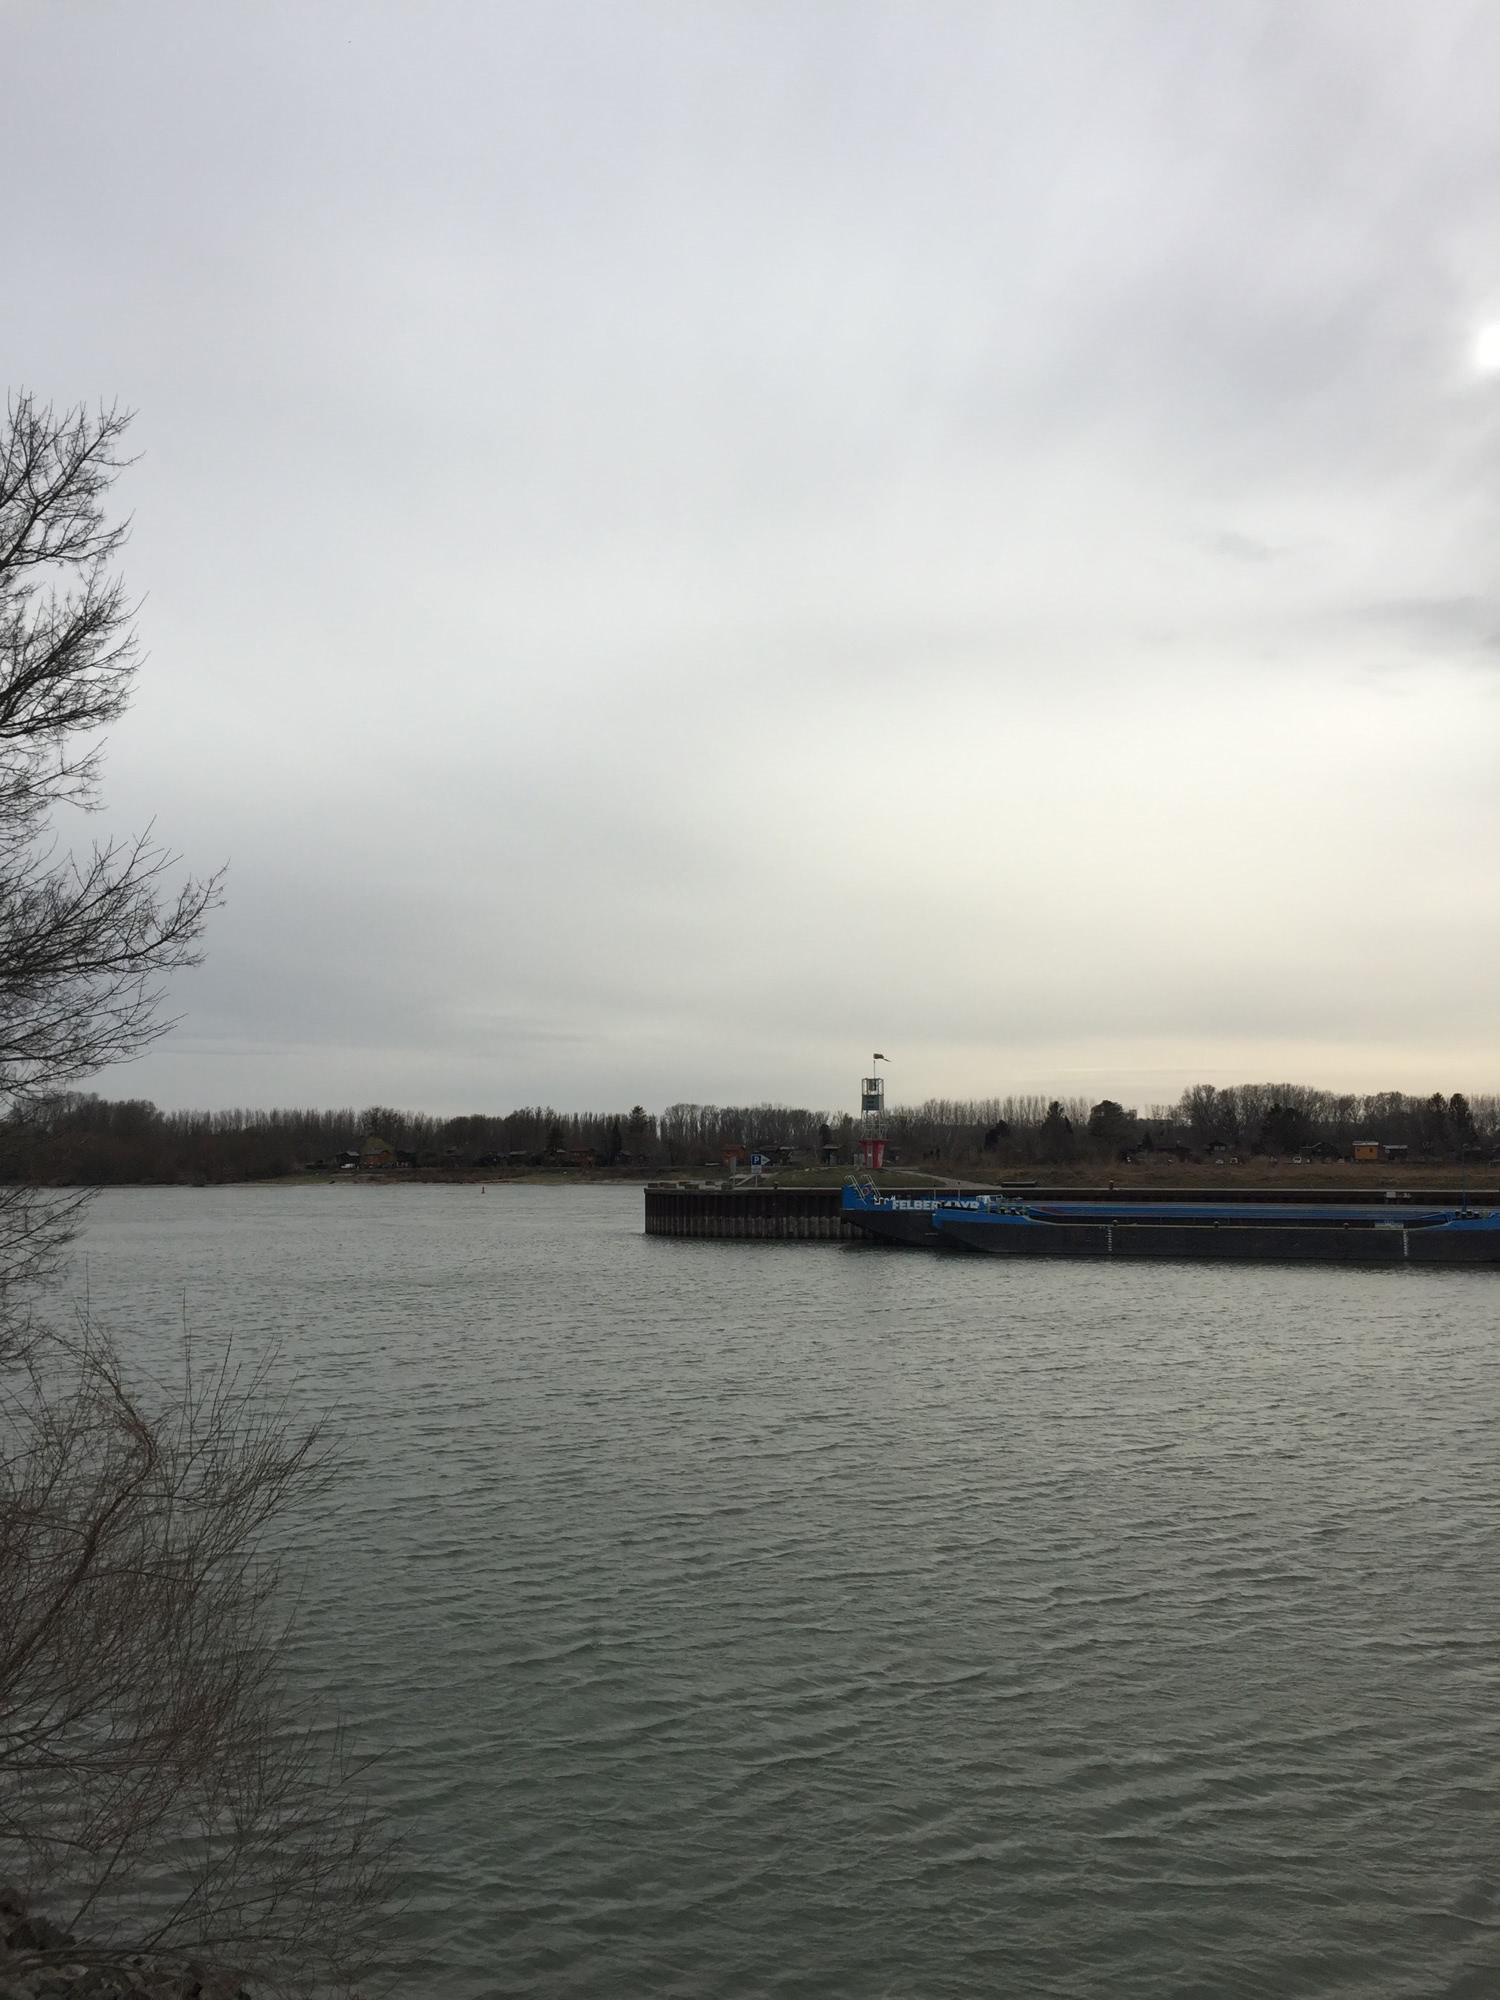 östliches Ende der Donauinsel, vom Ölhafen ausgesehen